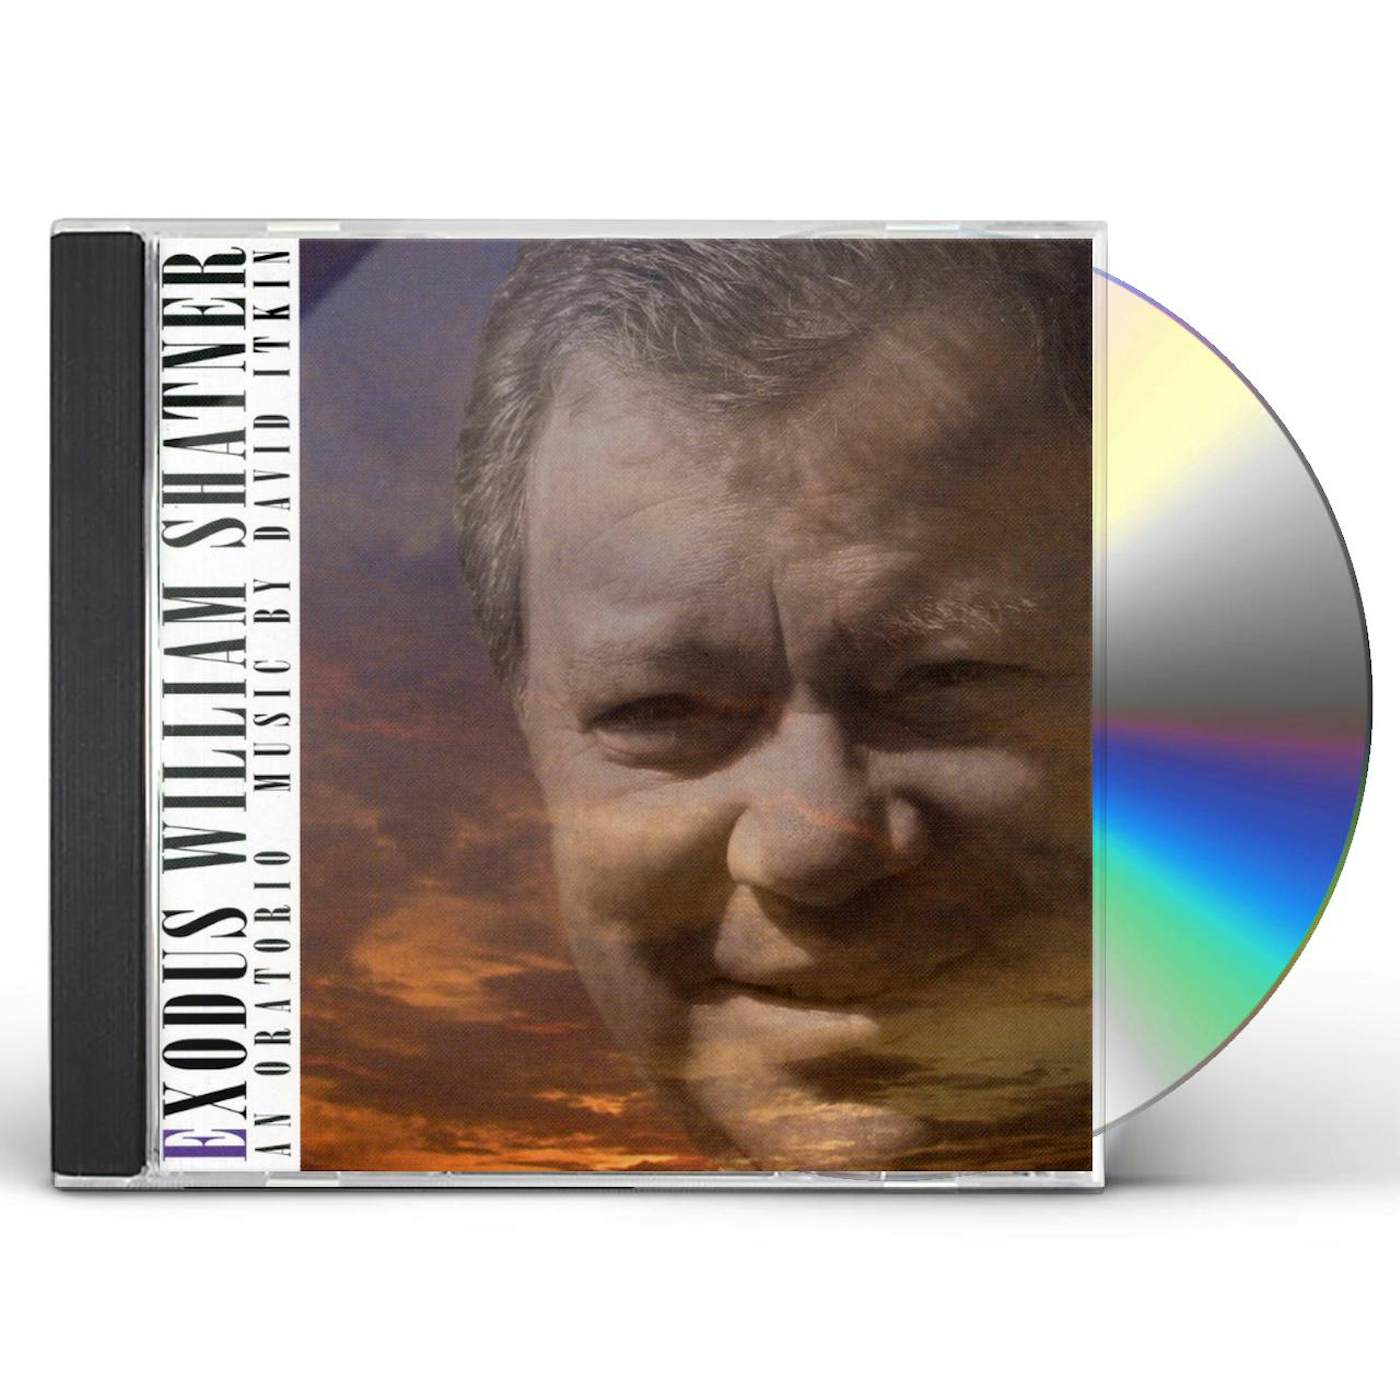 William Shatner EXODUS: AN ORATORIO IN THREE PARTS CD